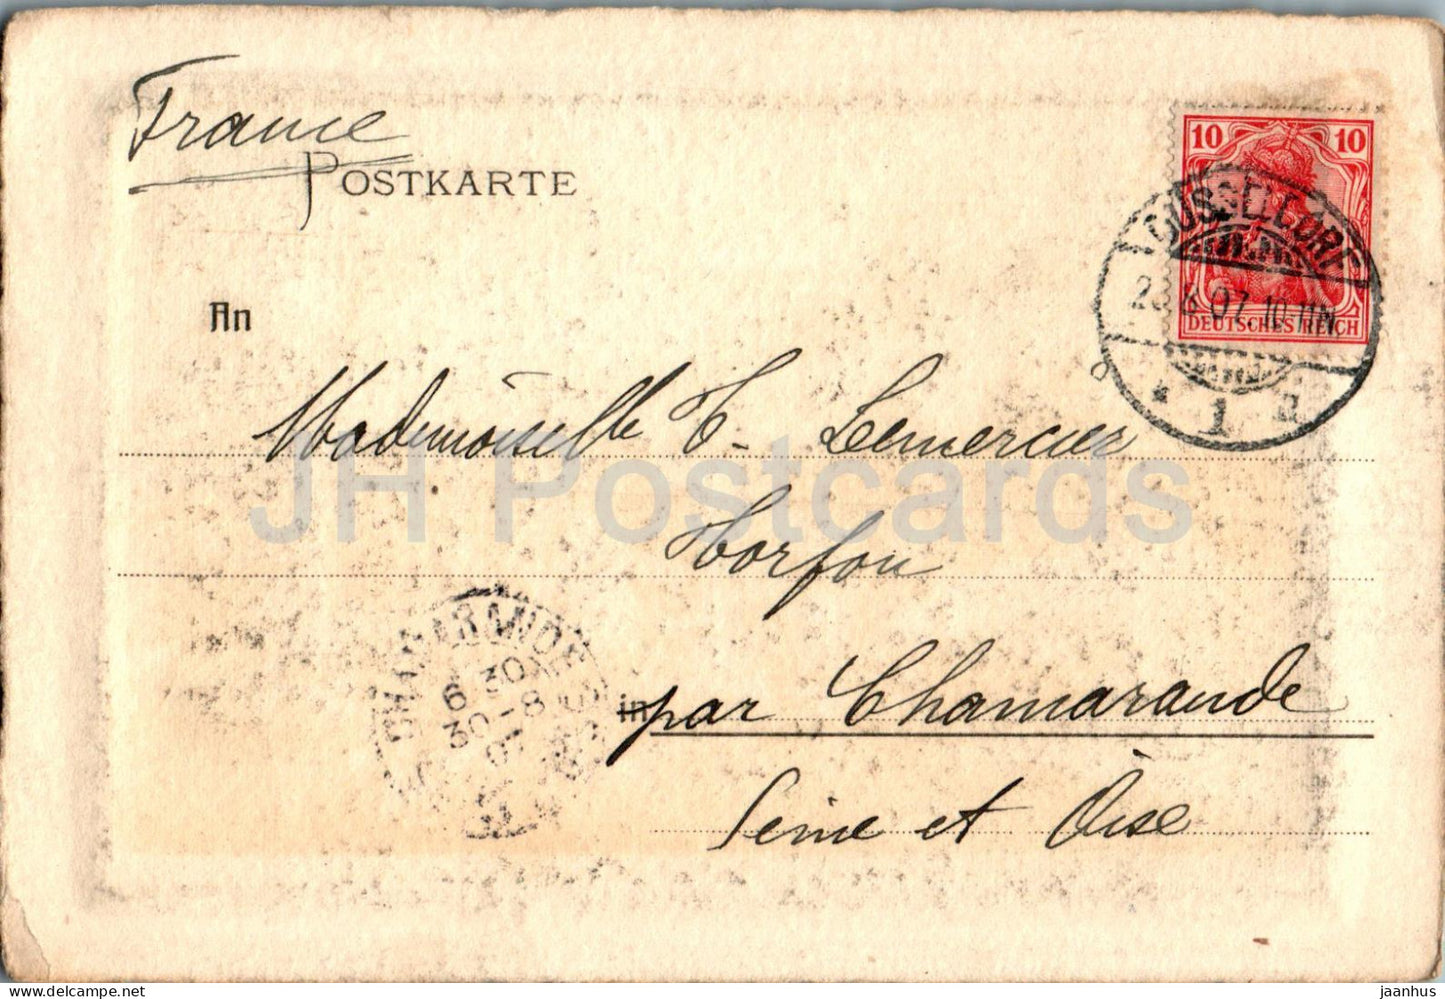 Dusseldorf - Cologne - Ehrenhof des Kunst Palastes - Court of Honour - old postcard - 1907 - Germany - used